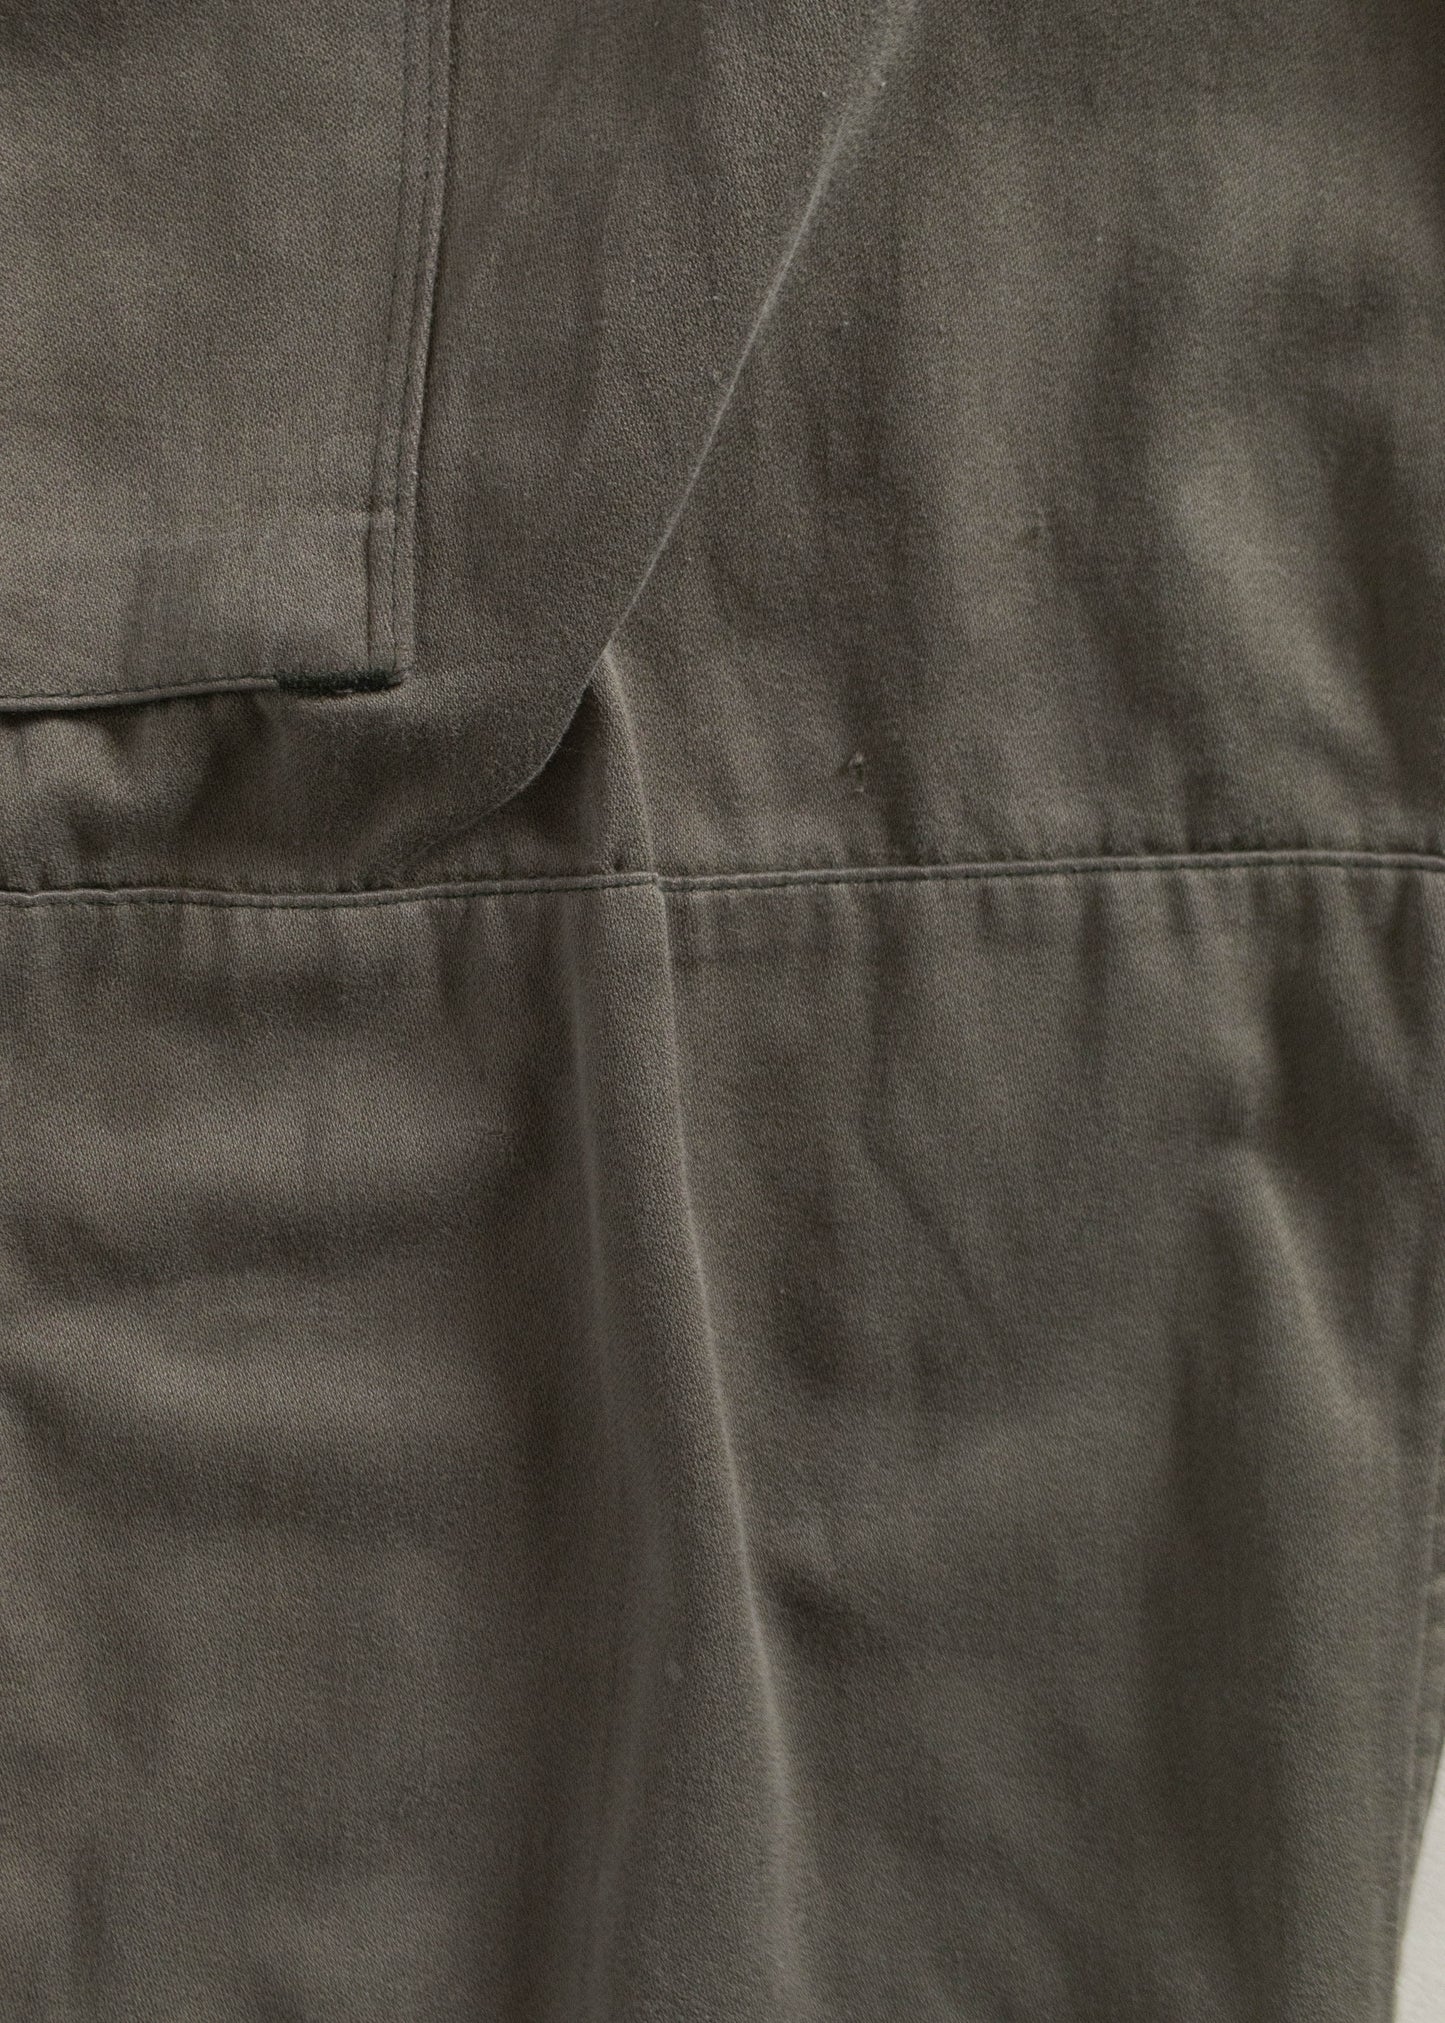 Vintage 1980s Paul Boyé French Military Cargo Pants Size Women's 29 Men's 32